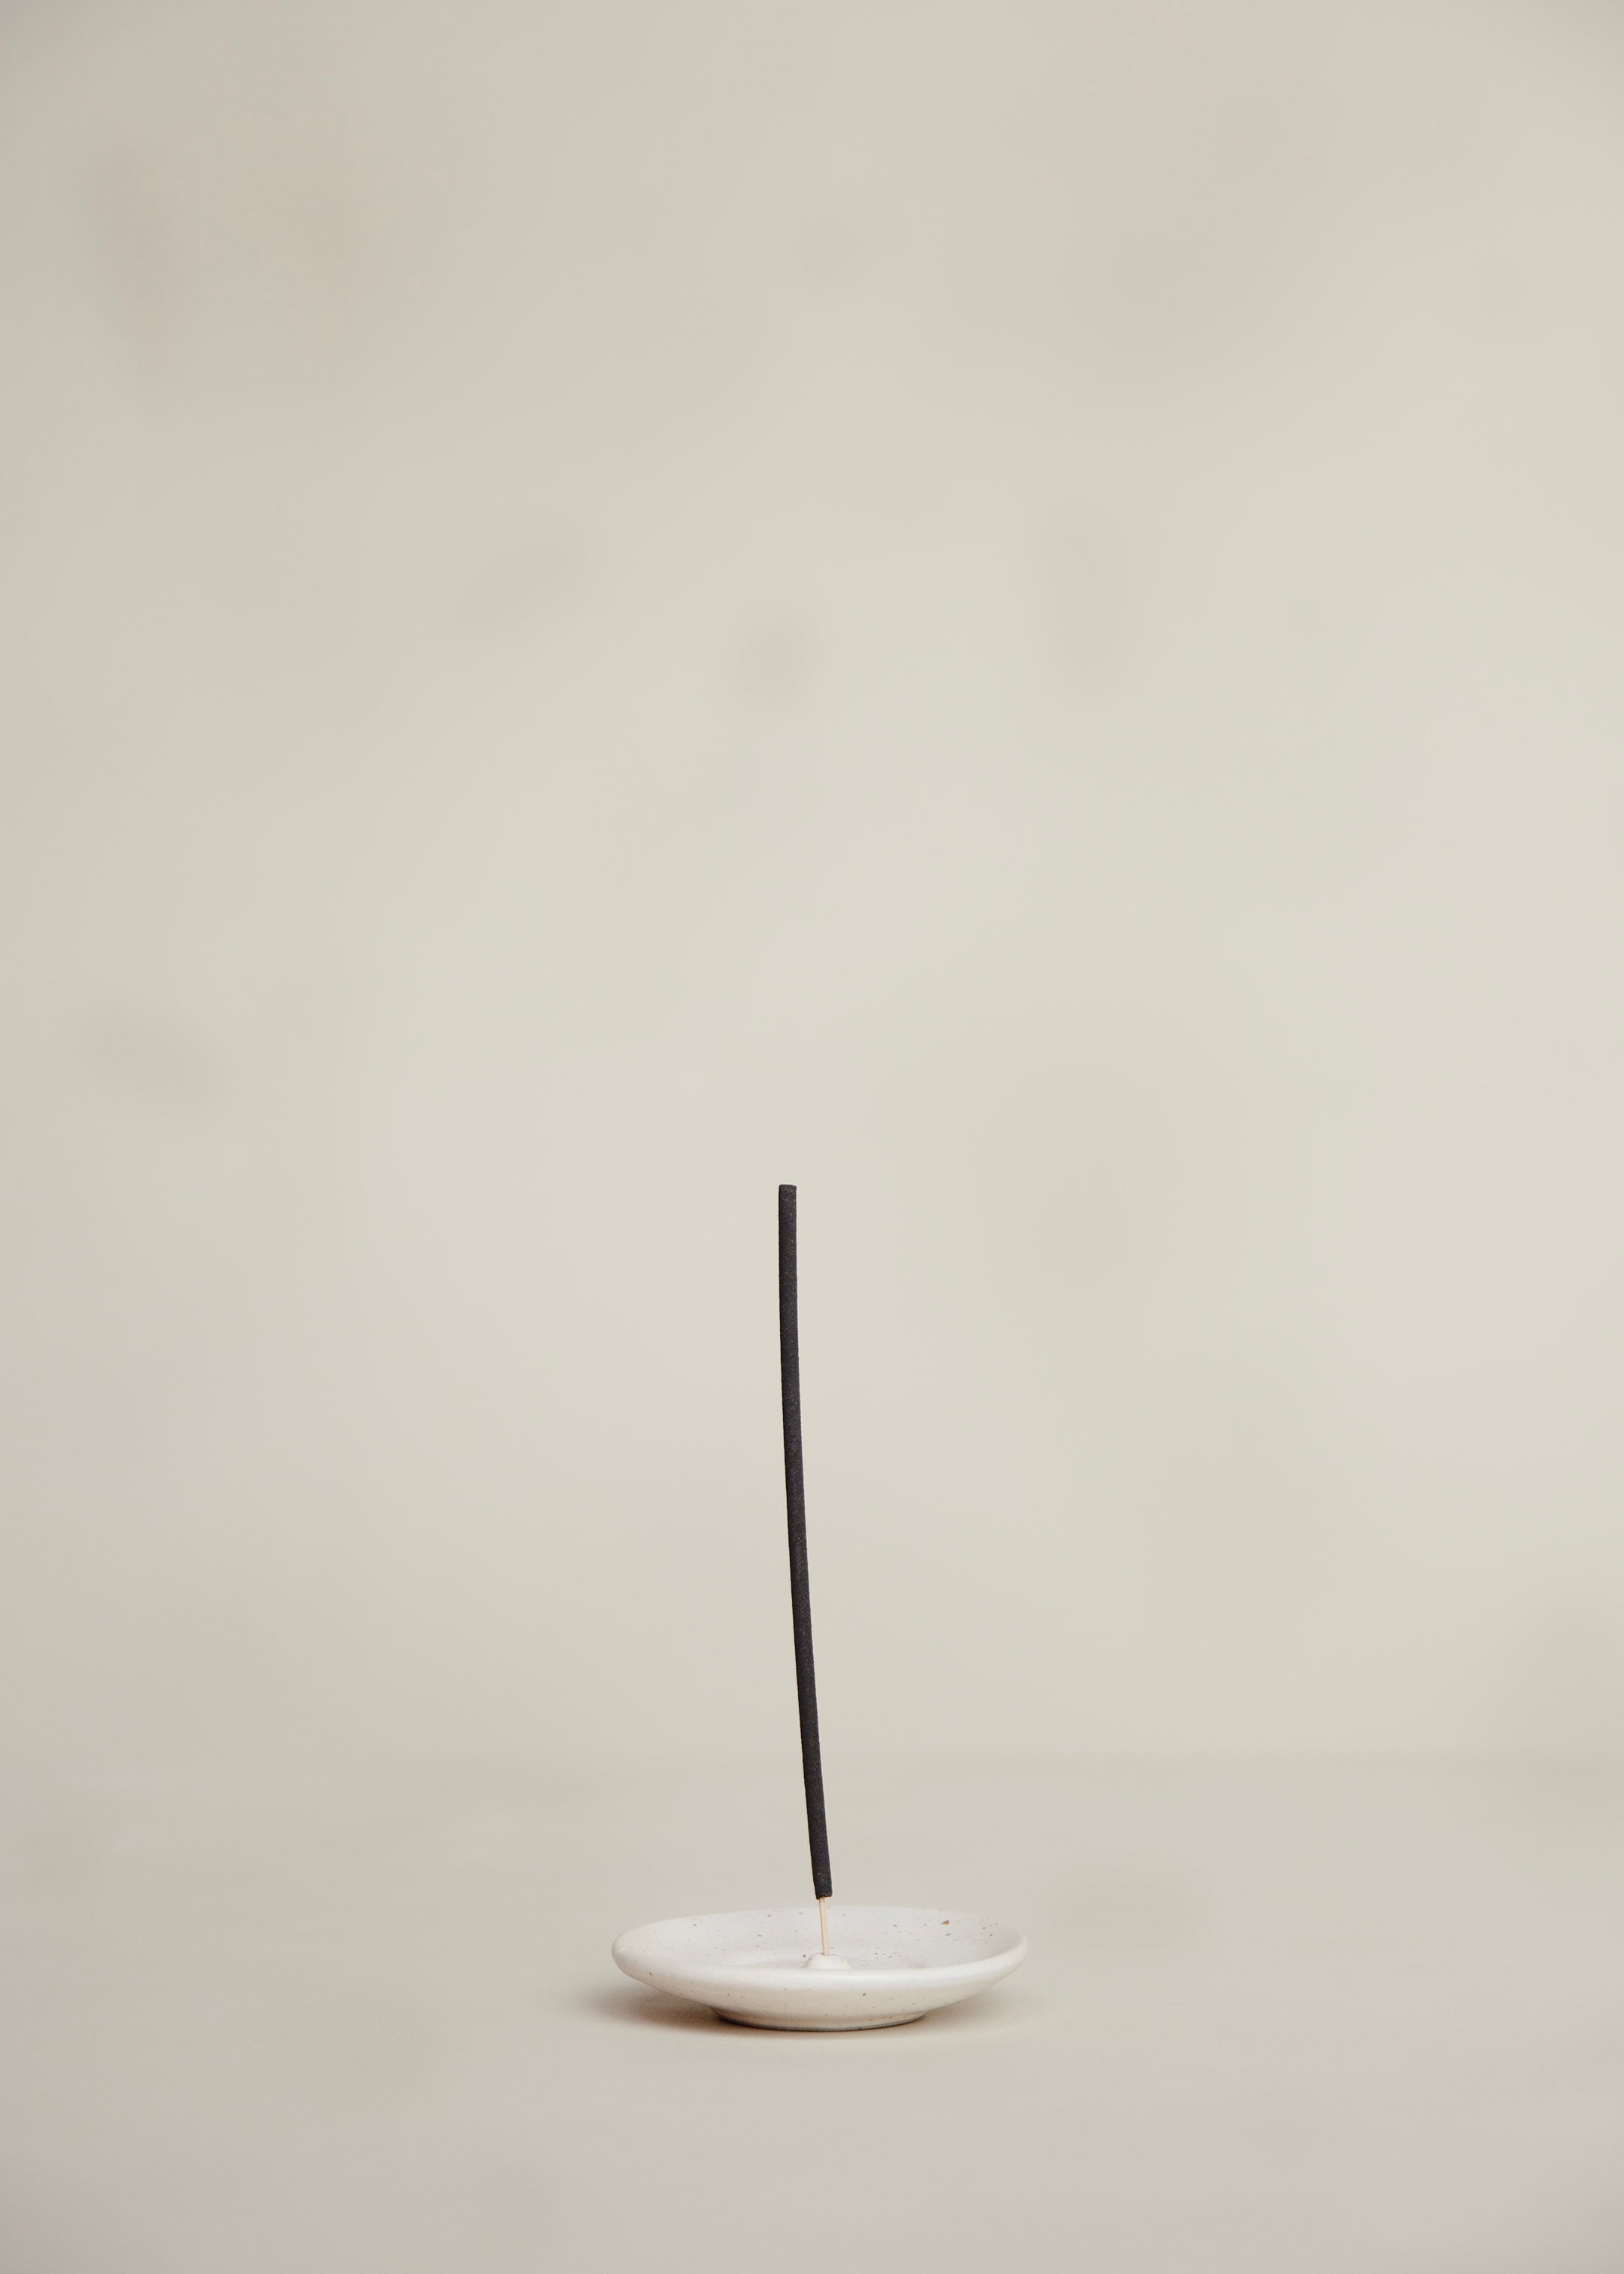 Kawi Incense Holder / Speckled White